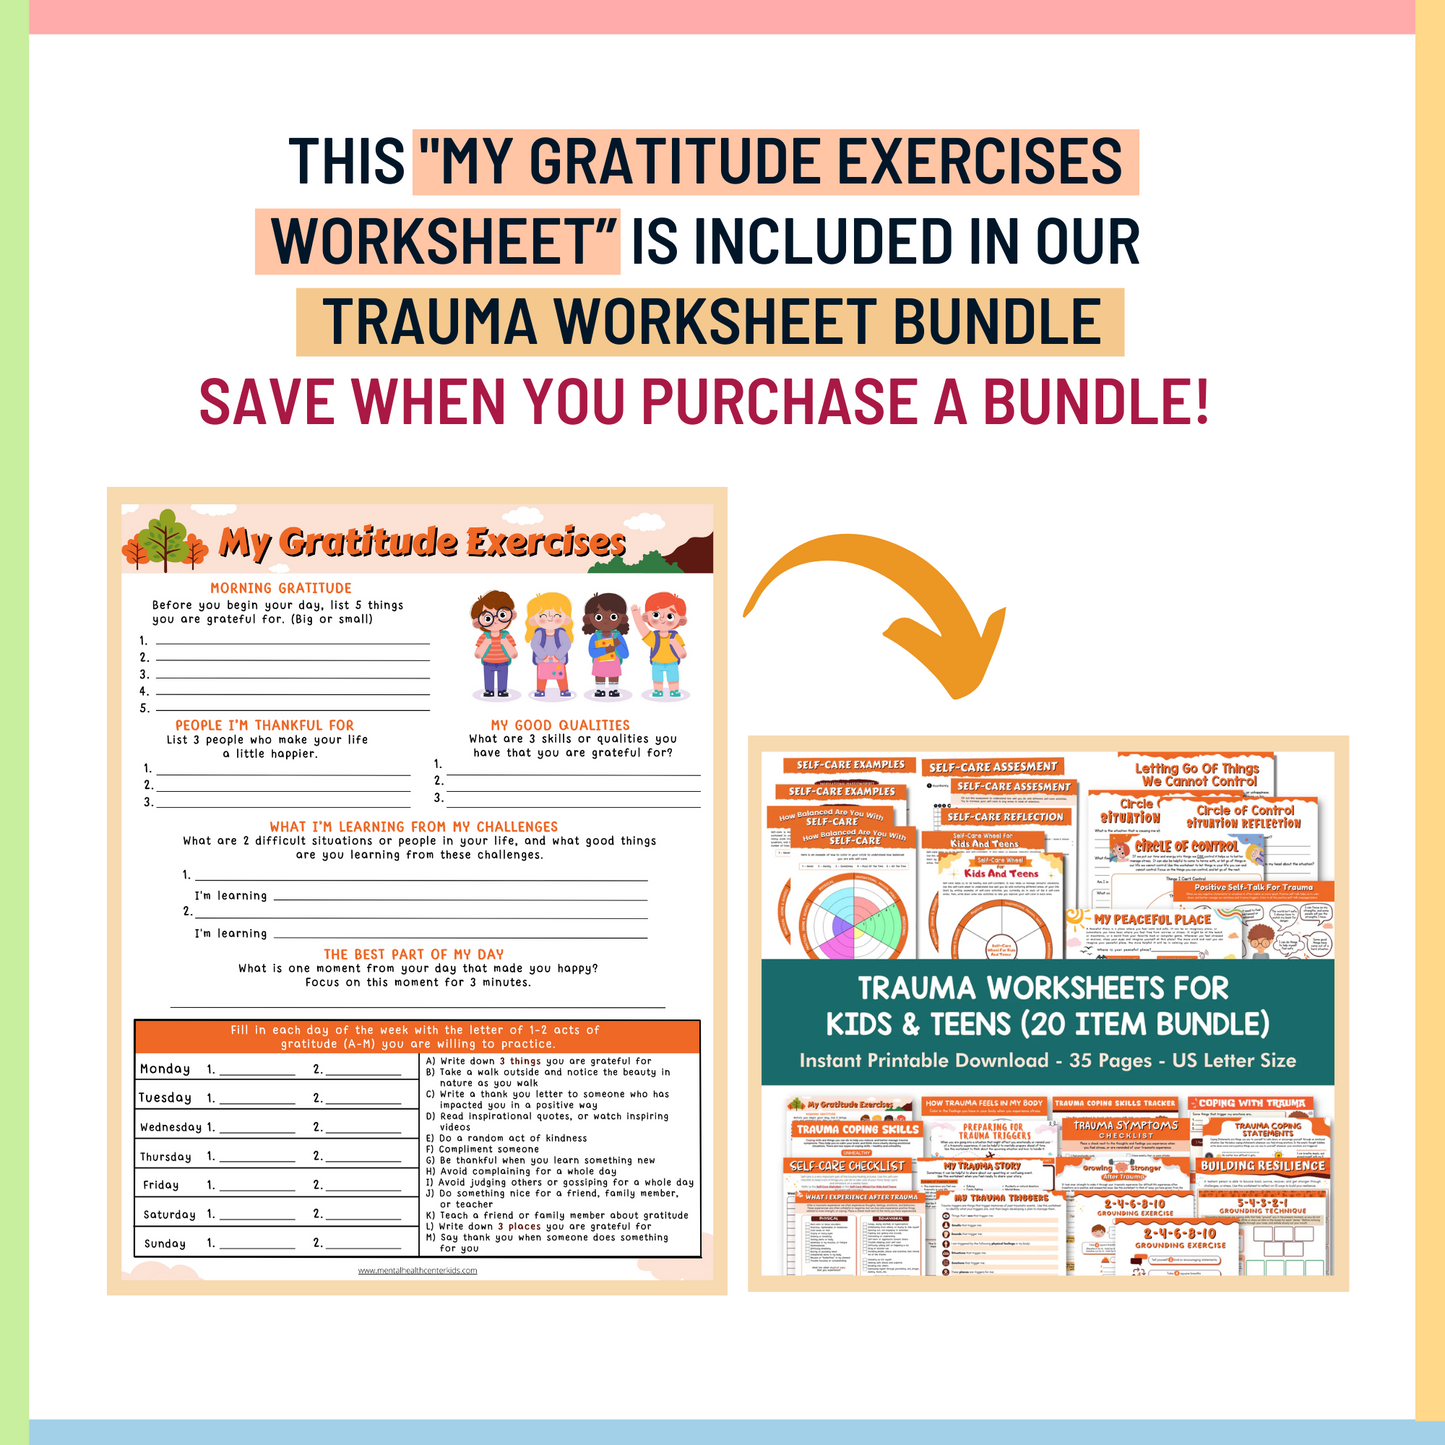 My Gratitude Exercises Worksheet for Kids & Teens